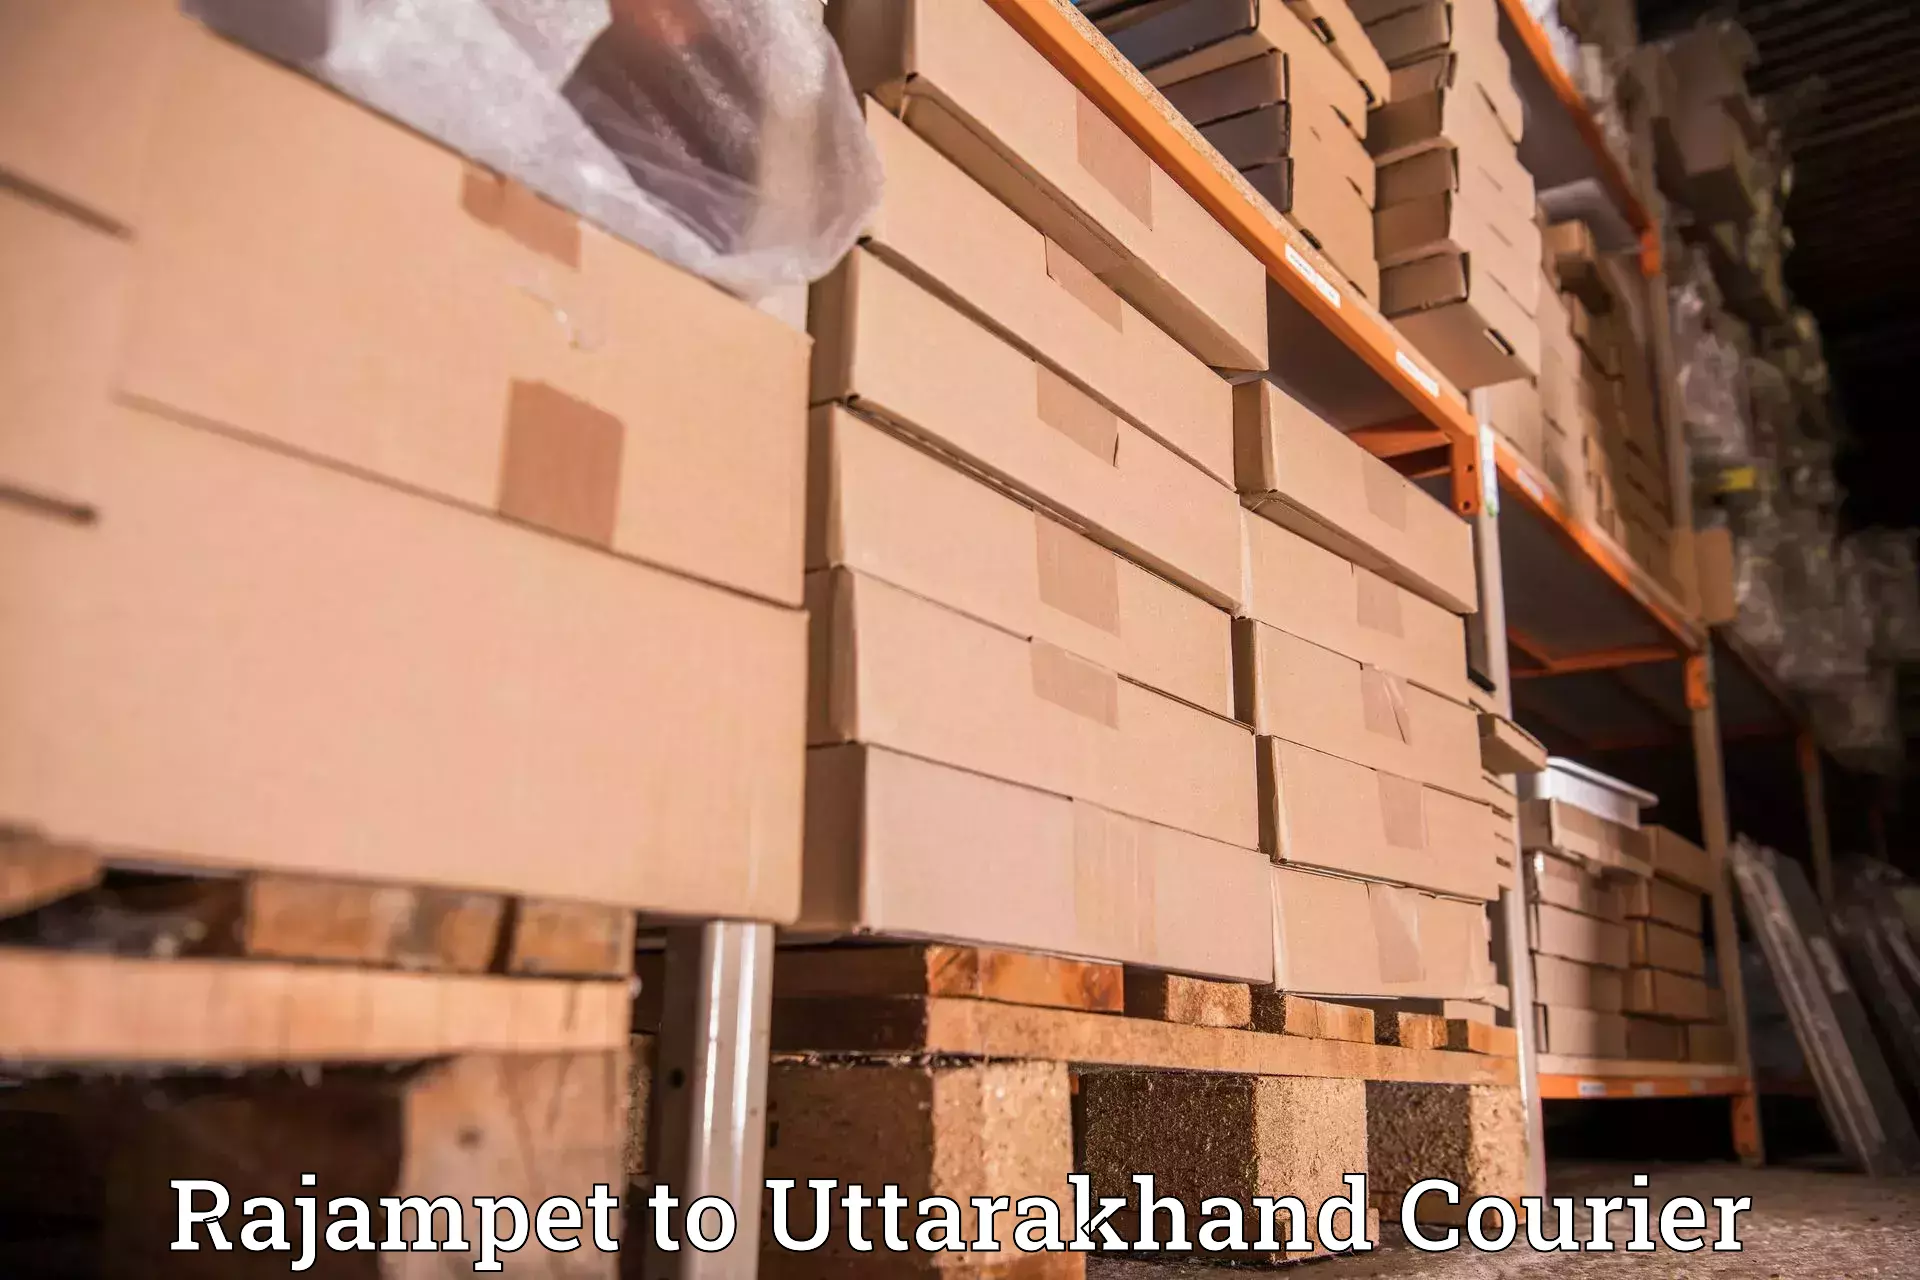 Smart shipping technology Rajampet to Khatima